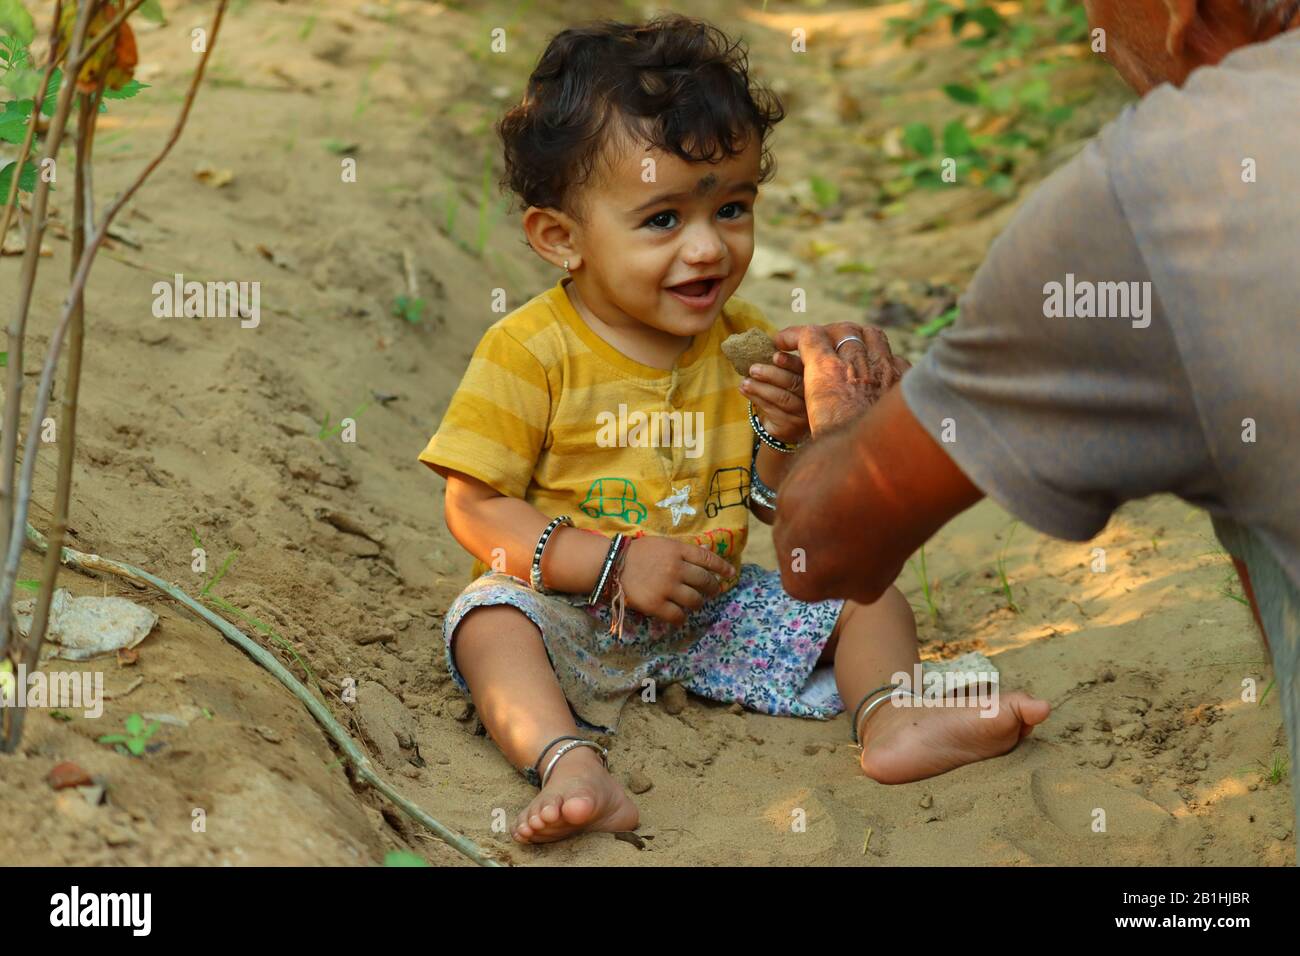 Außenporträt eines schönen süßen asiatischen oder indischen Kindes mit fröhlichem Lächeln Gesichtsausdruck, das mit Sand spielt und die Natur beobachtet und zeigt, was Stockfoto